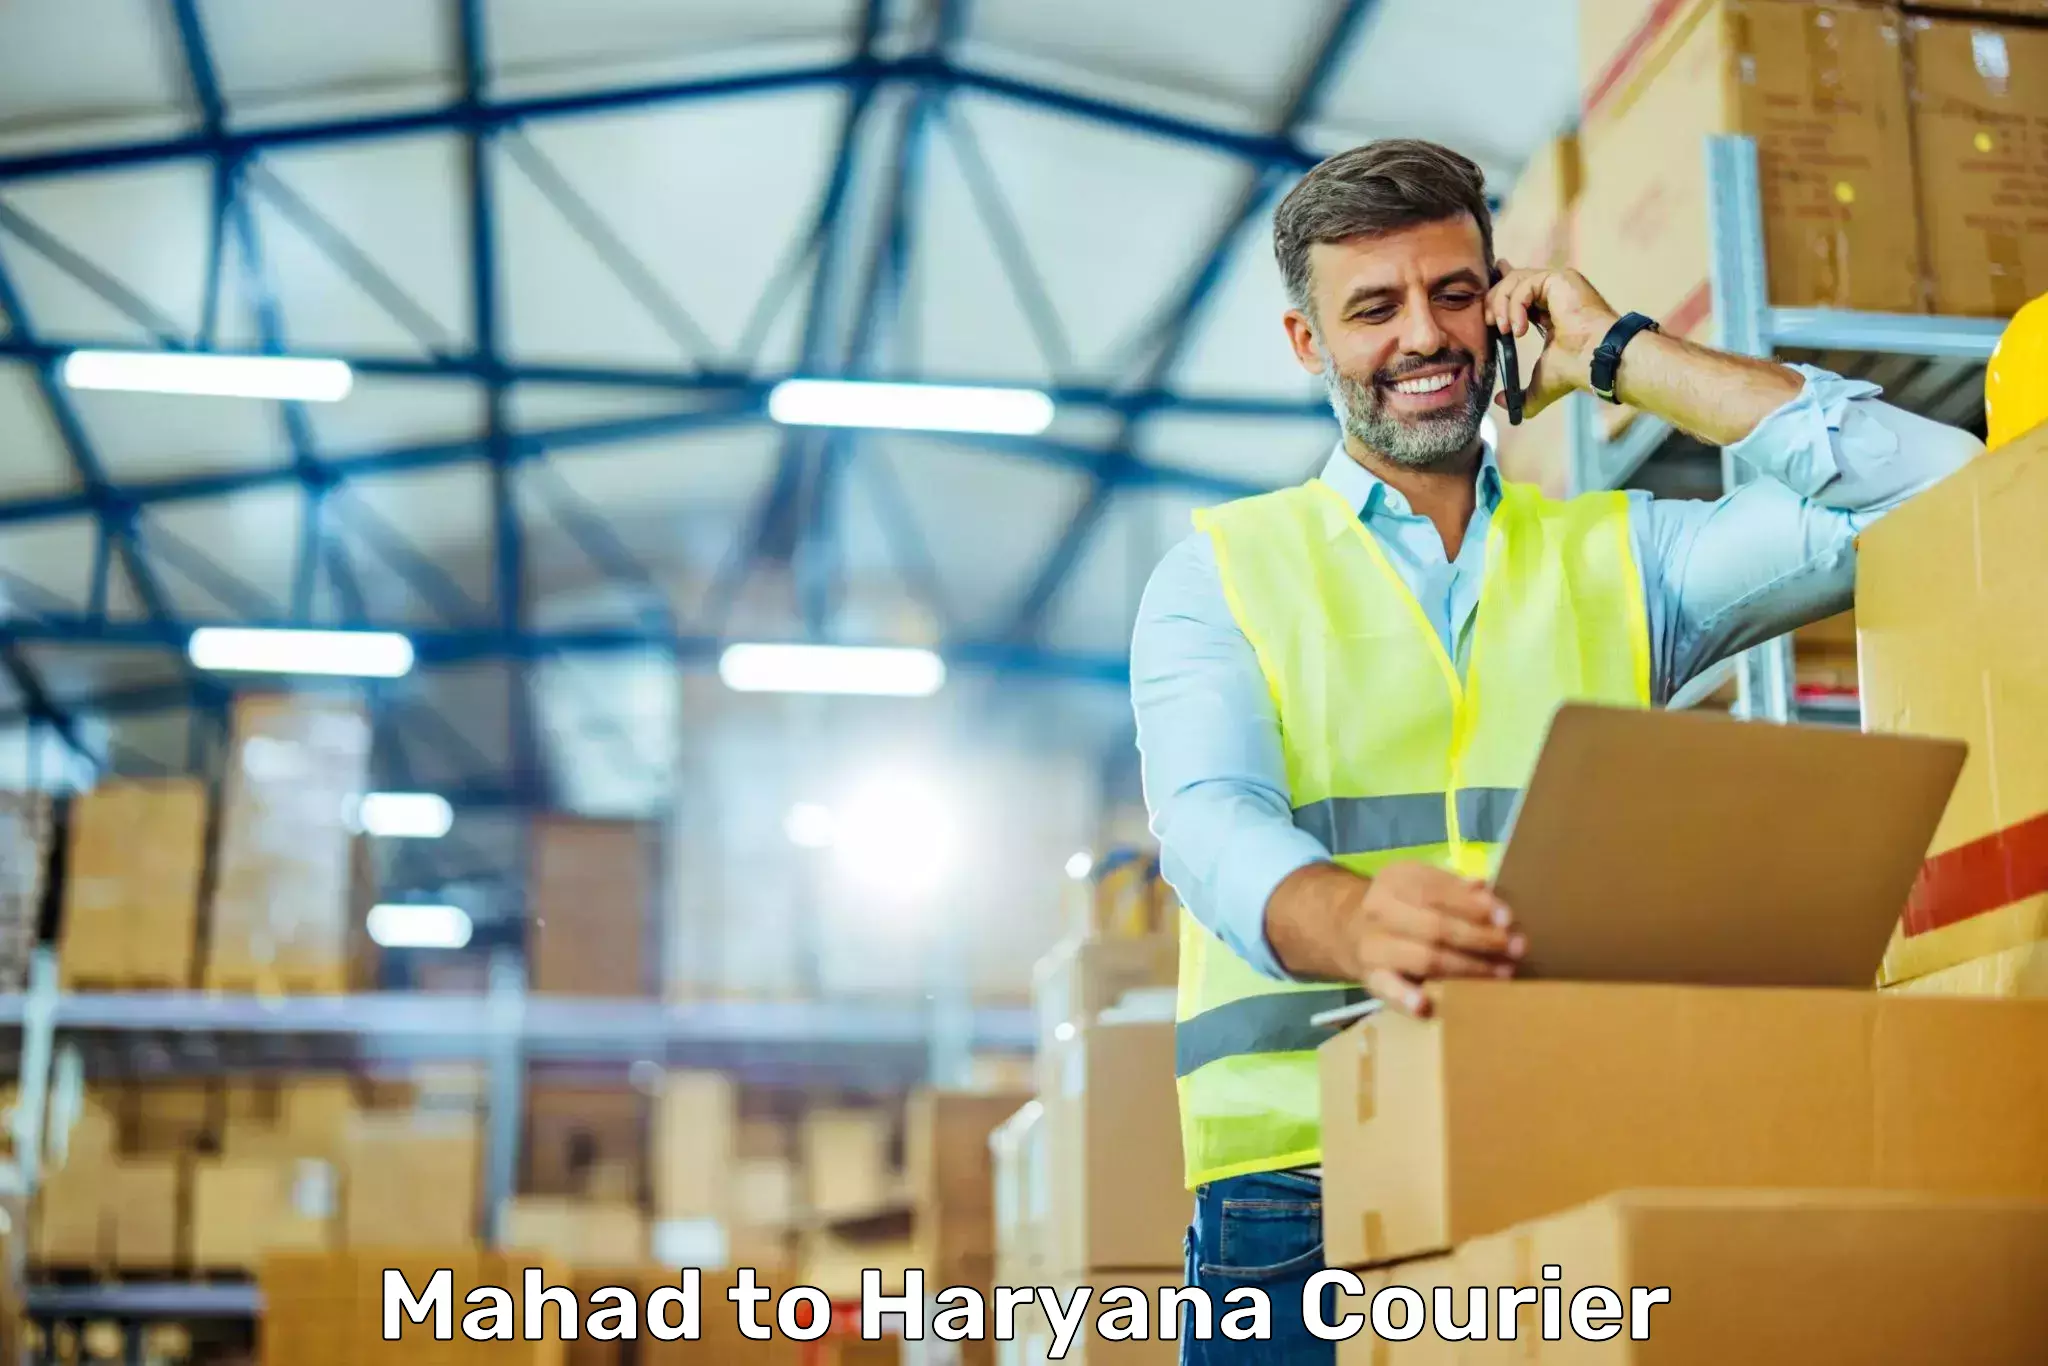 On-demand shipping options Mahad to Odhan